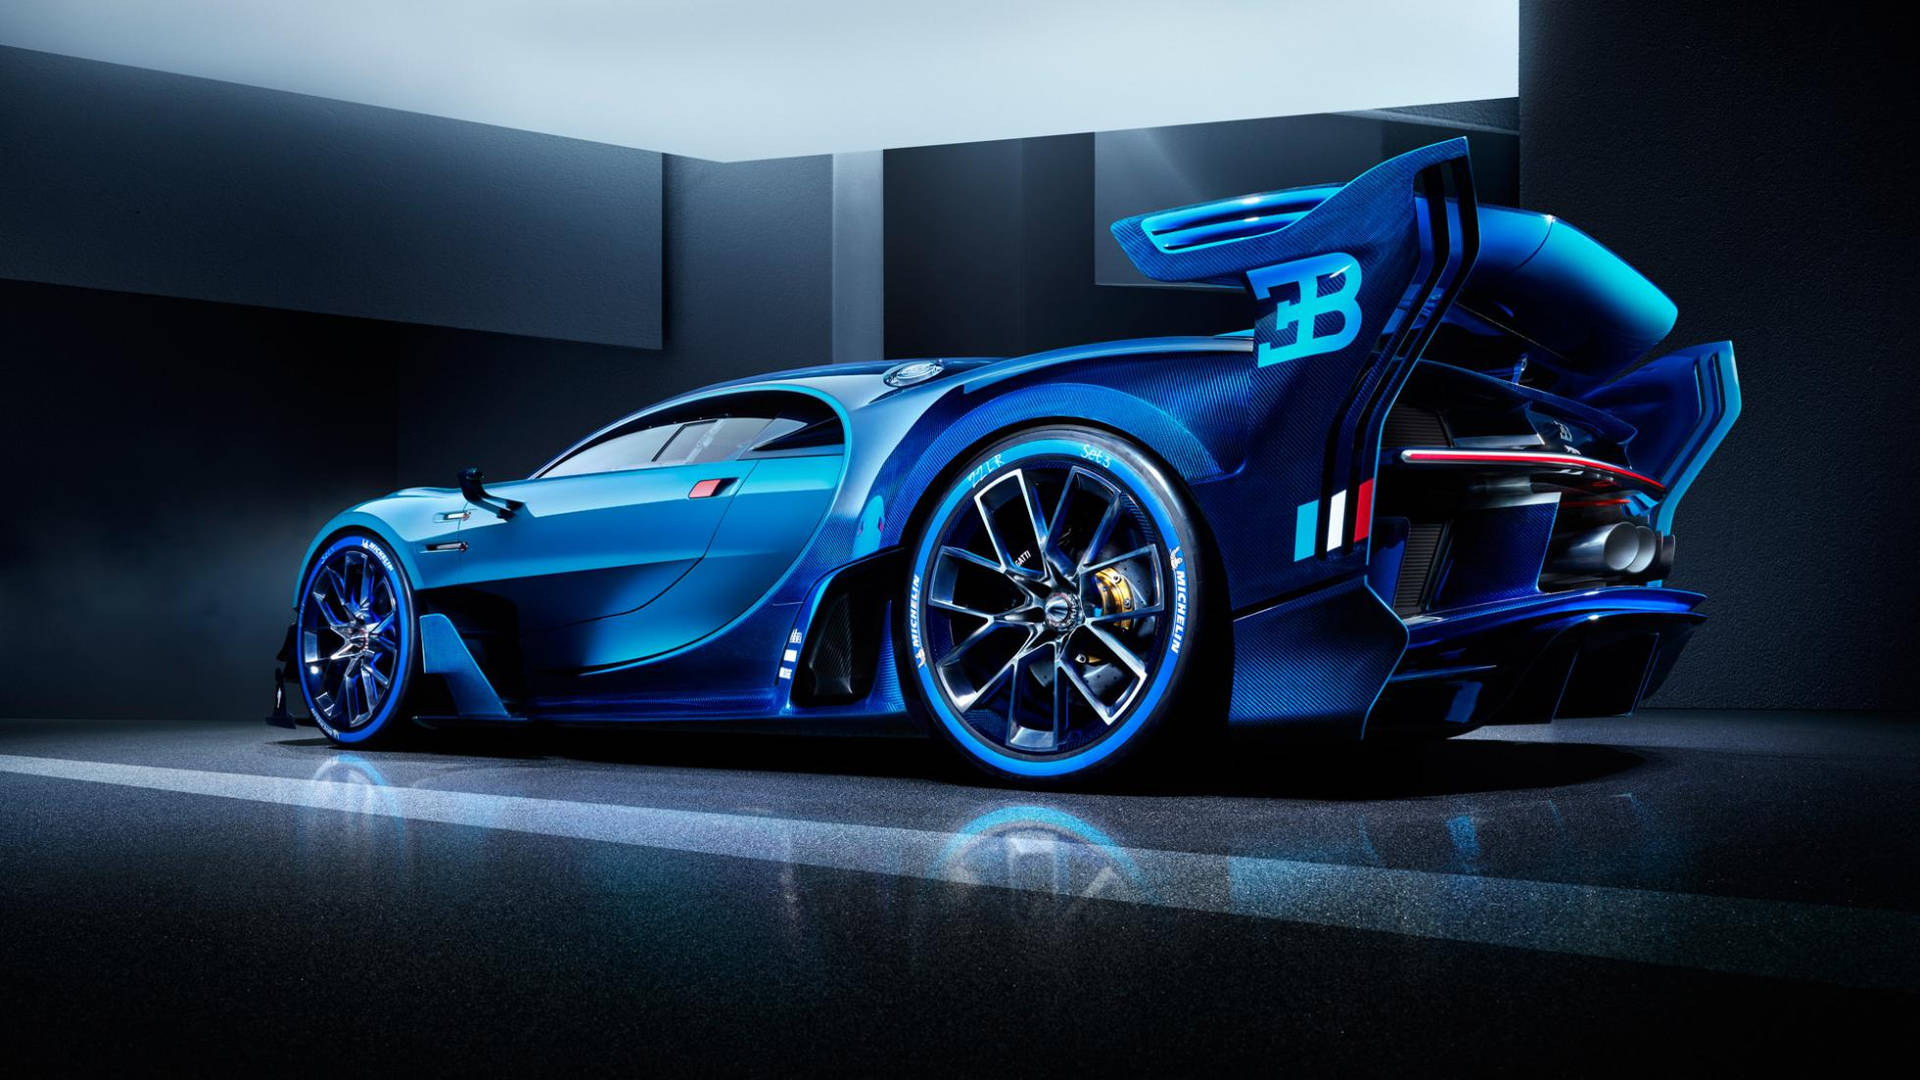 Bugatti 3B Blue Sports Car Wallpaper